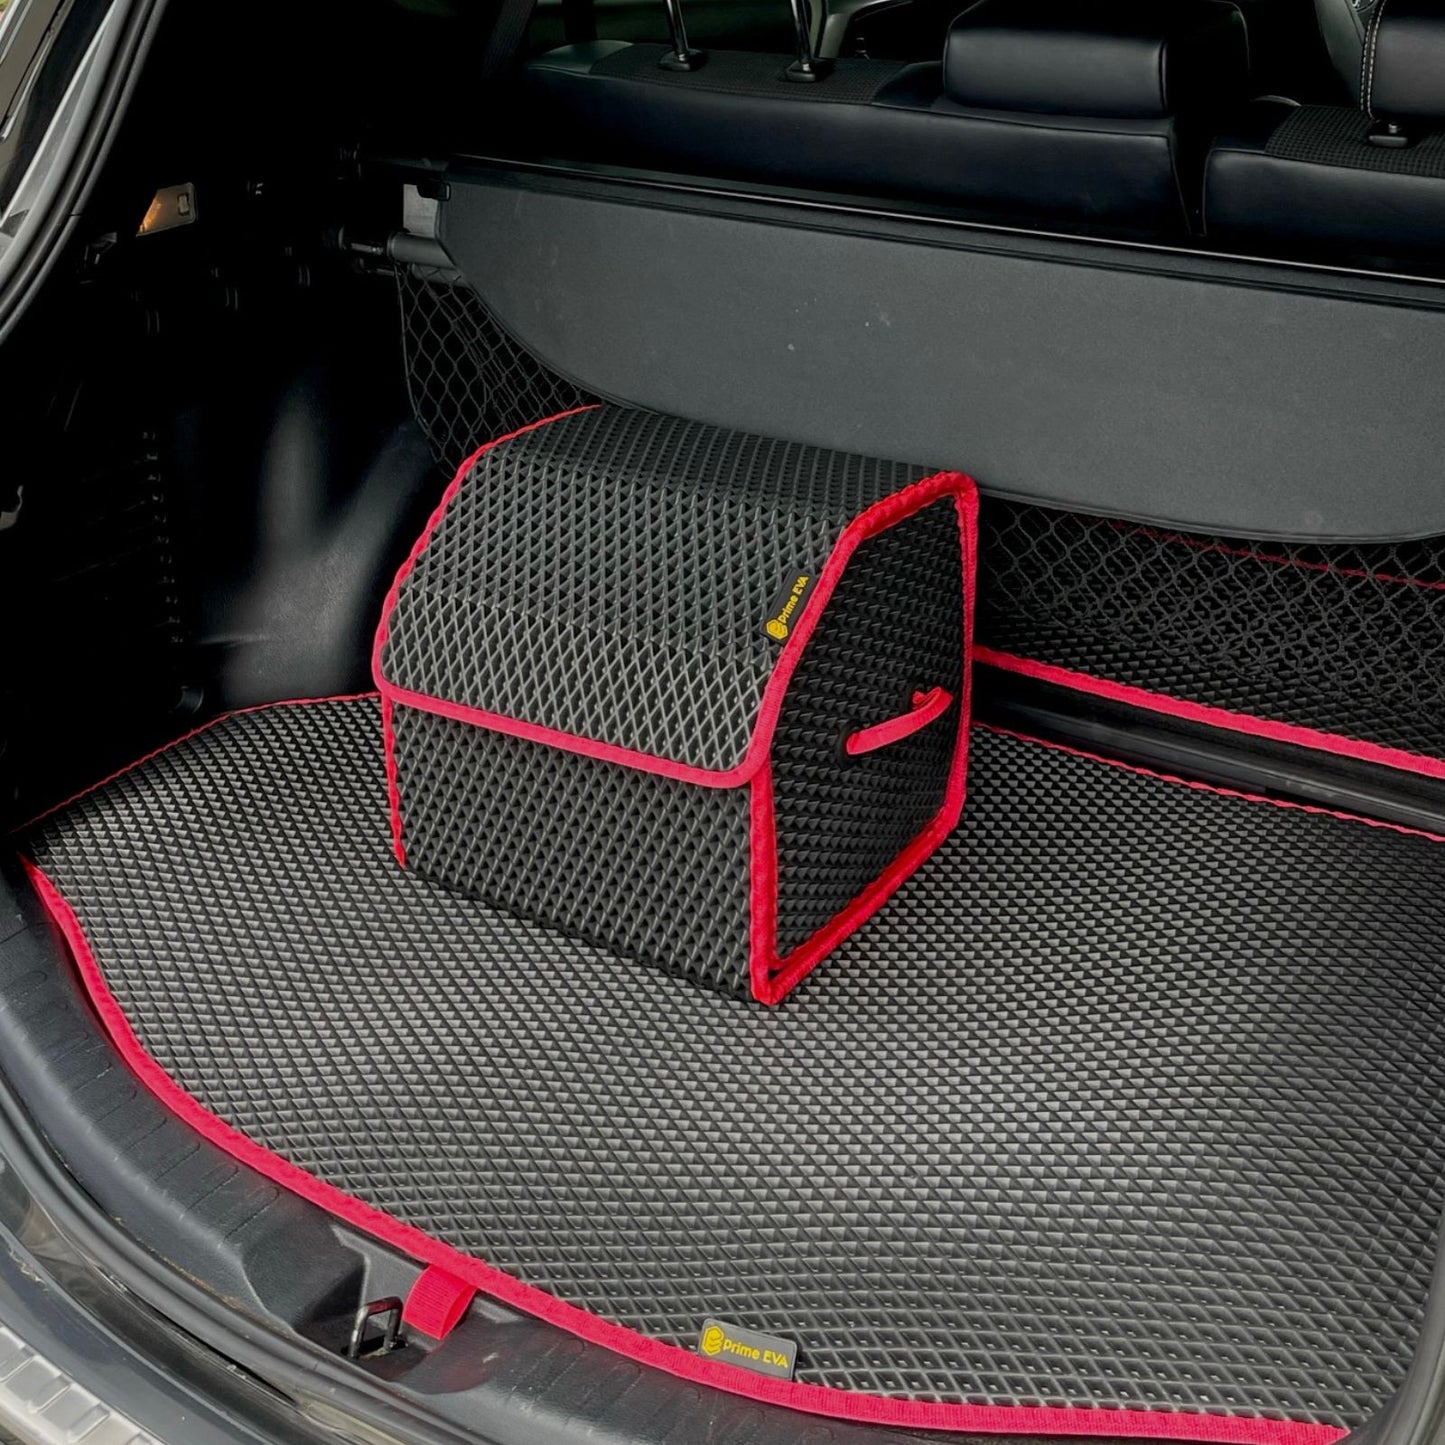 Schwarze und rote Kofferraumaufbewahrung und Matte, ideal für die Organisation und Sauberkeit des Autos.